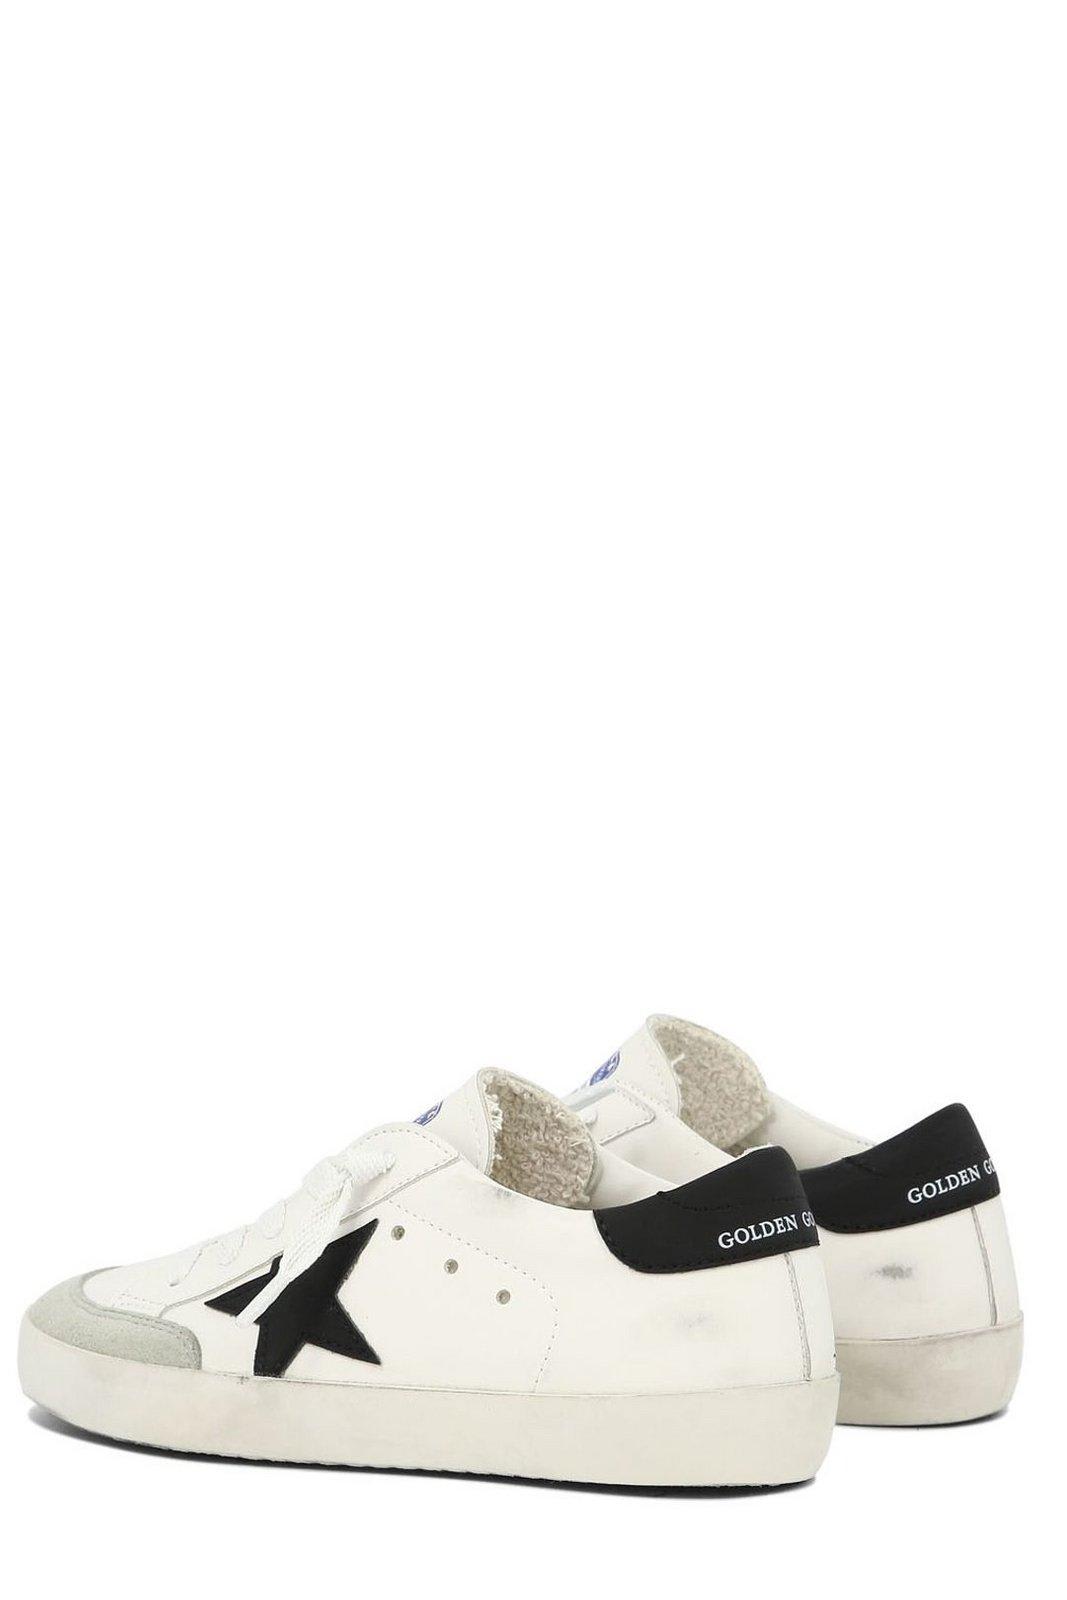 Shop Golden Goose Super-star Penstar Low-top Sneakers In Bianco/nero